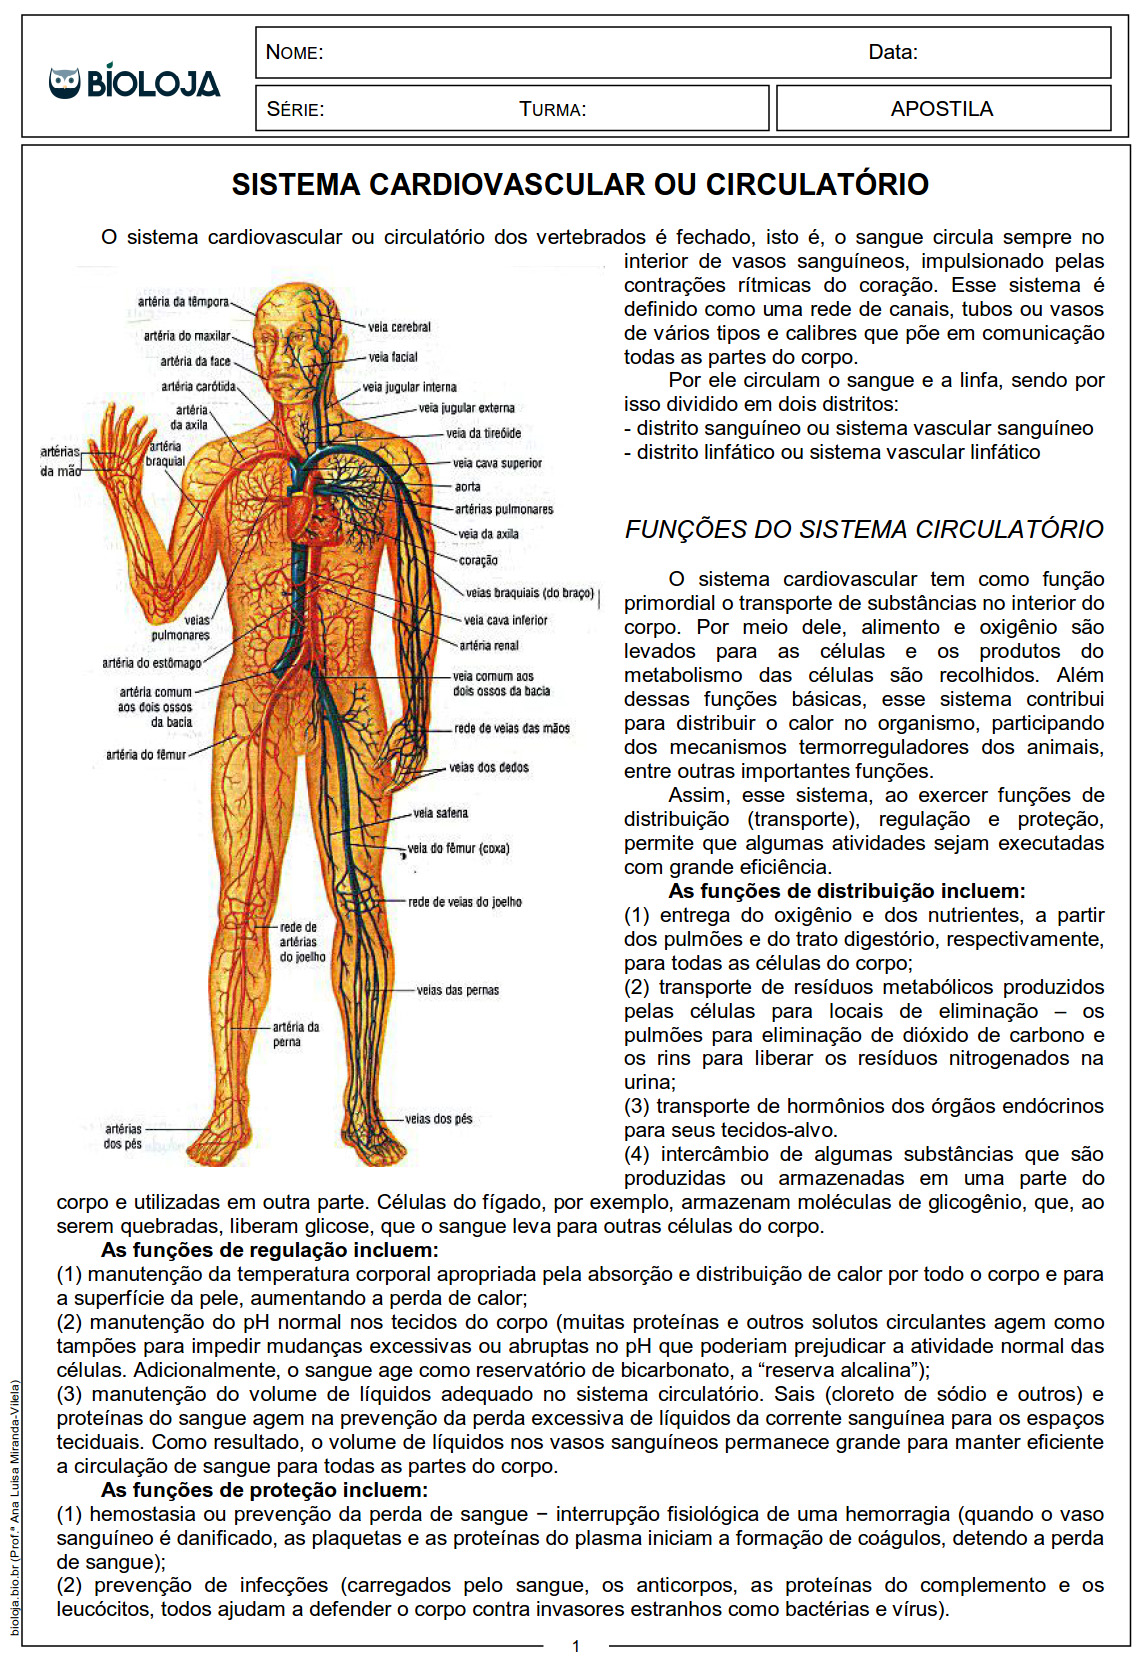 Apostila Fisiologia de órgãos e sistema I: sistema circulatório, sangue e coagulação sanguínea slide 1